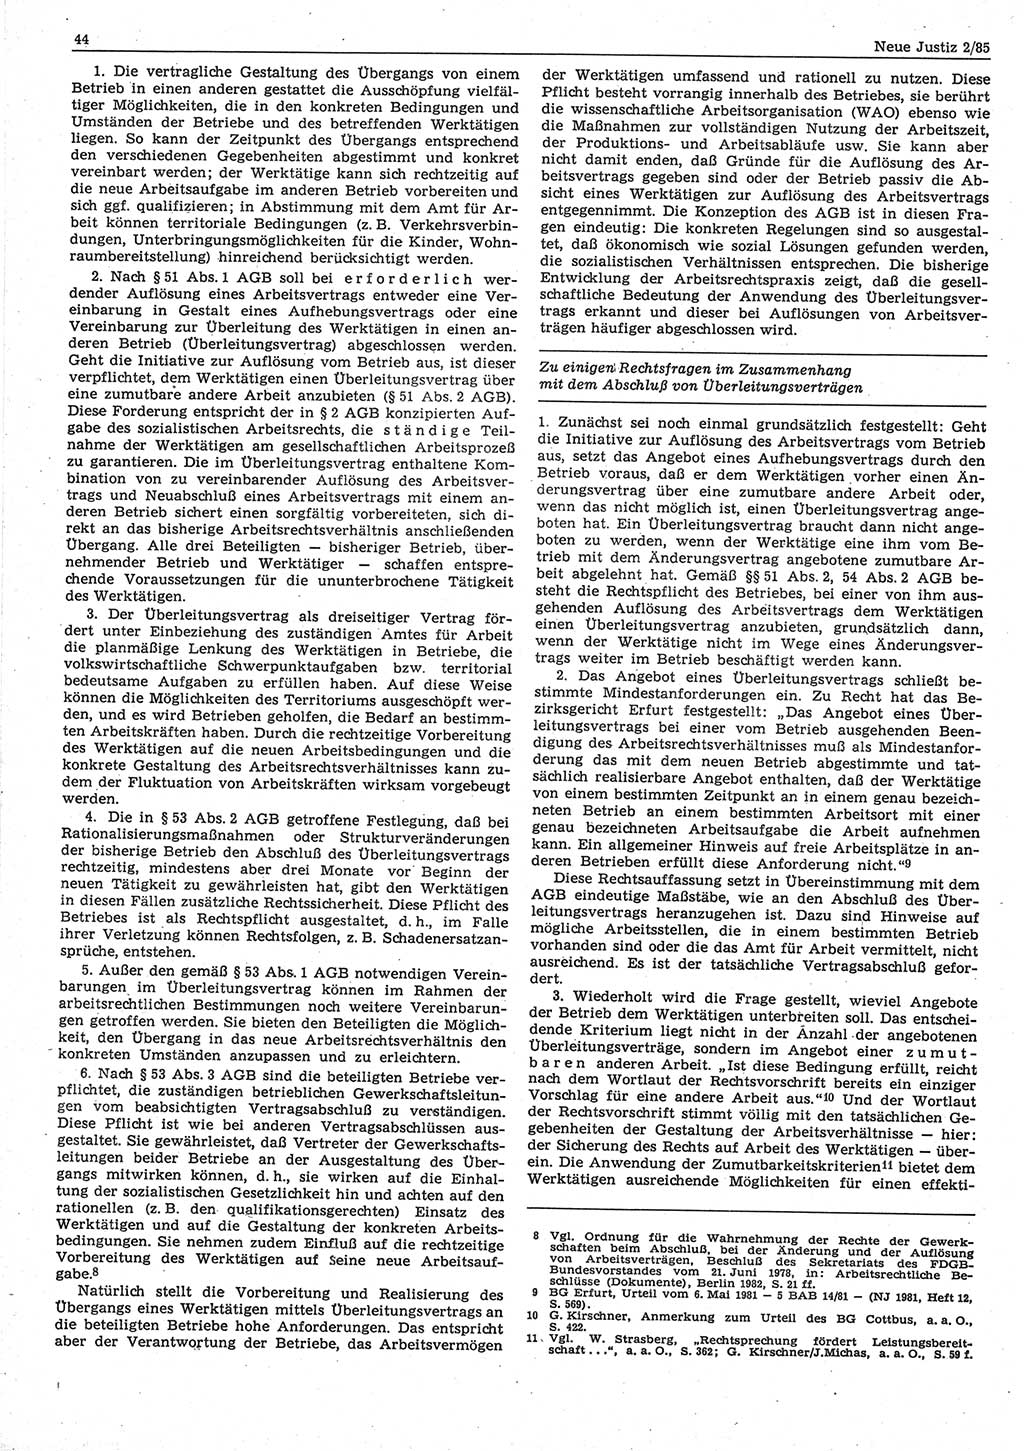 Neue Justiz (NJ), Zeitschrift für sozialistisches Recht und Gesetzlichkeit [Deutsche Demokratische Republik (DDR)], 39. Jahrgang 1985, Seite 44 (NJ DDR 1985, S. 44)